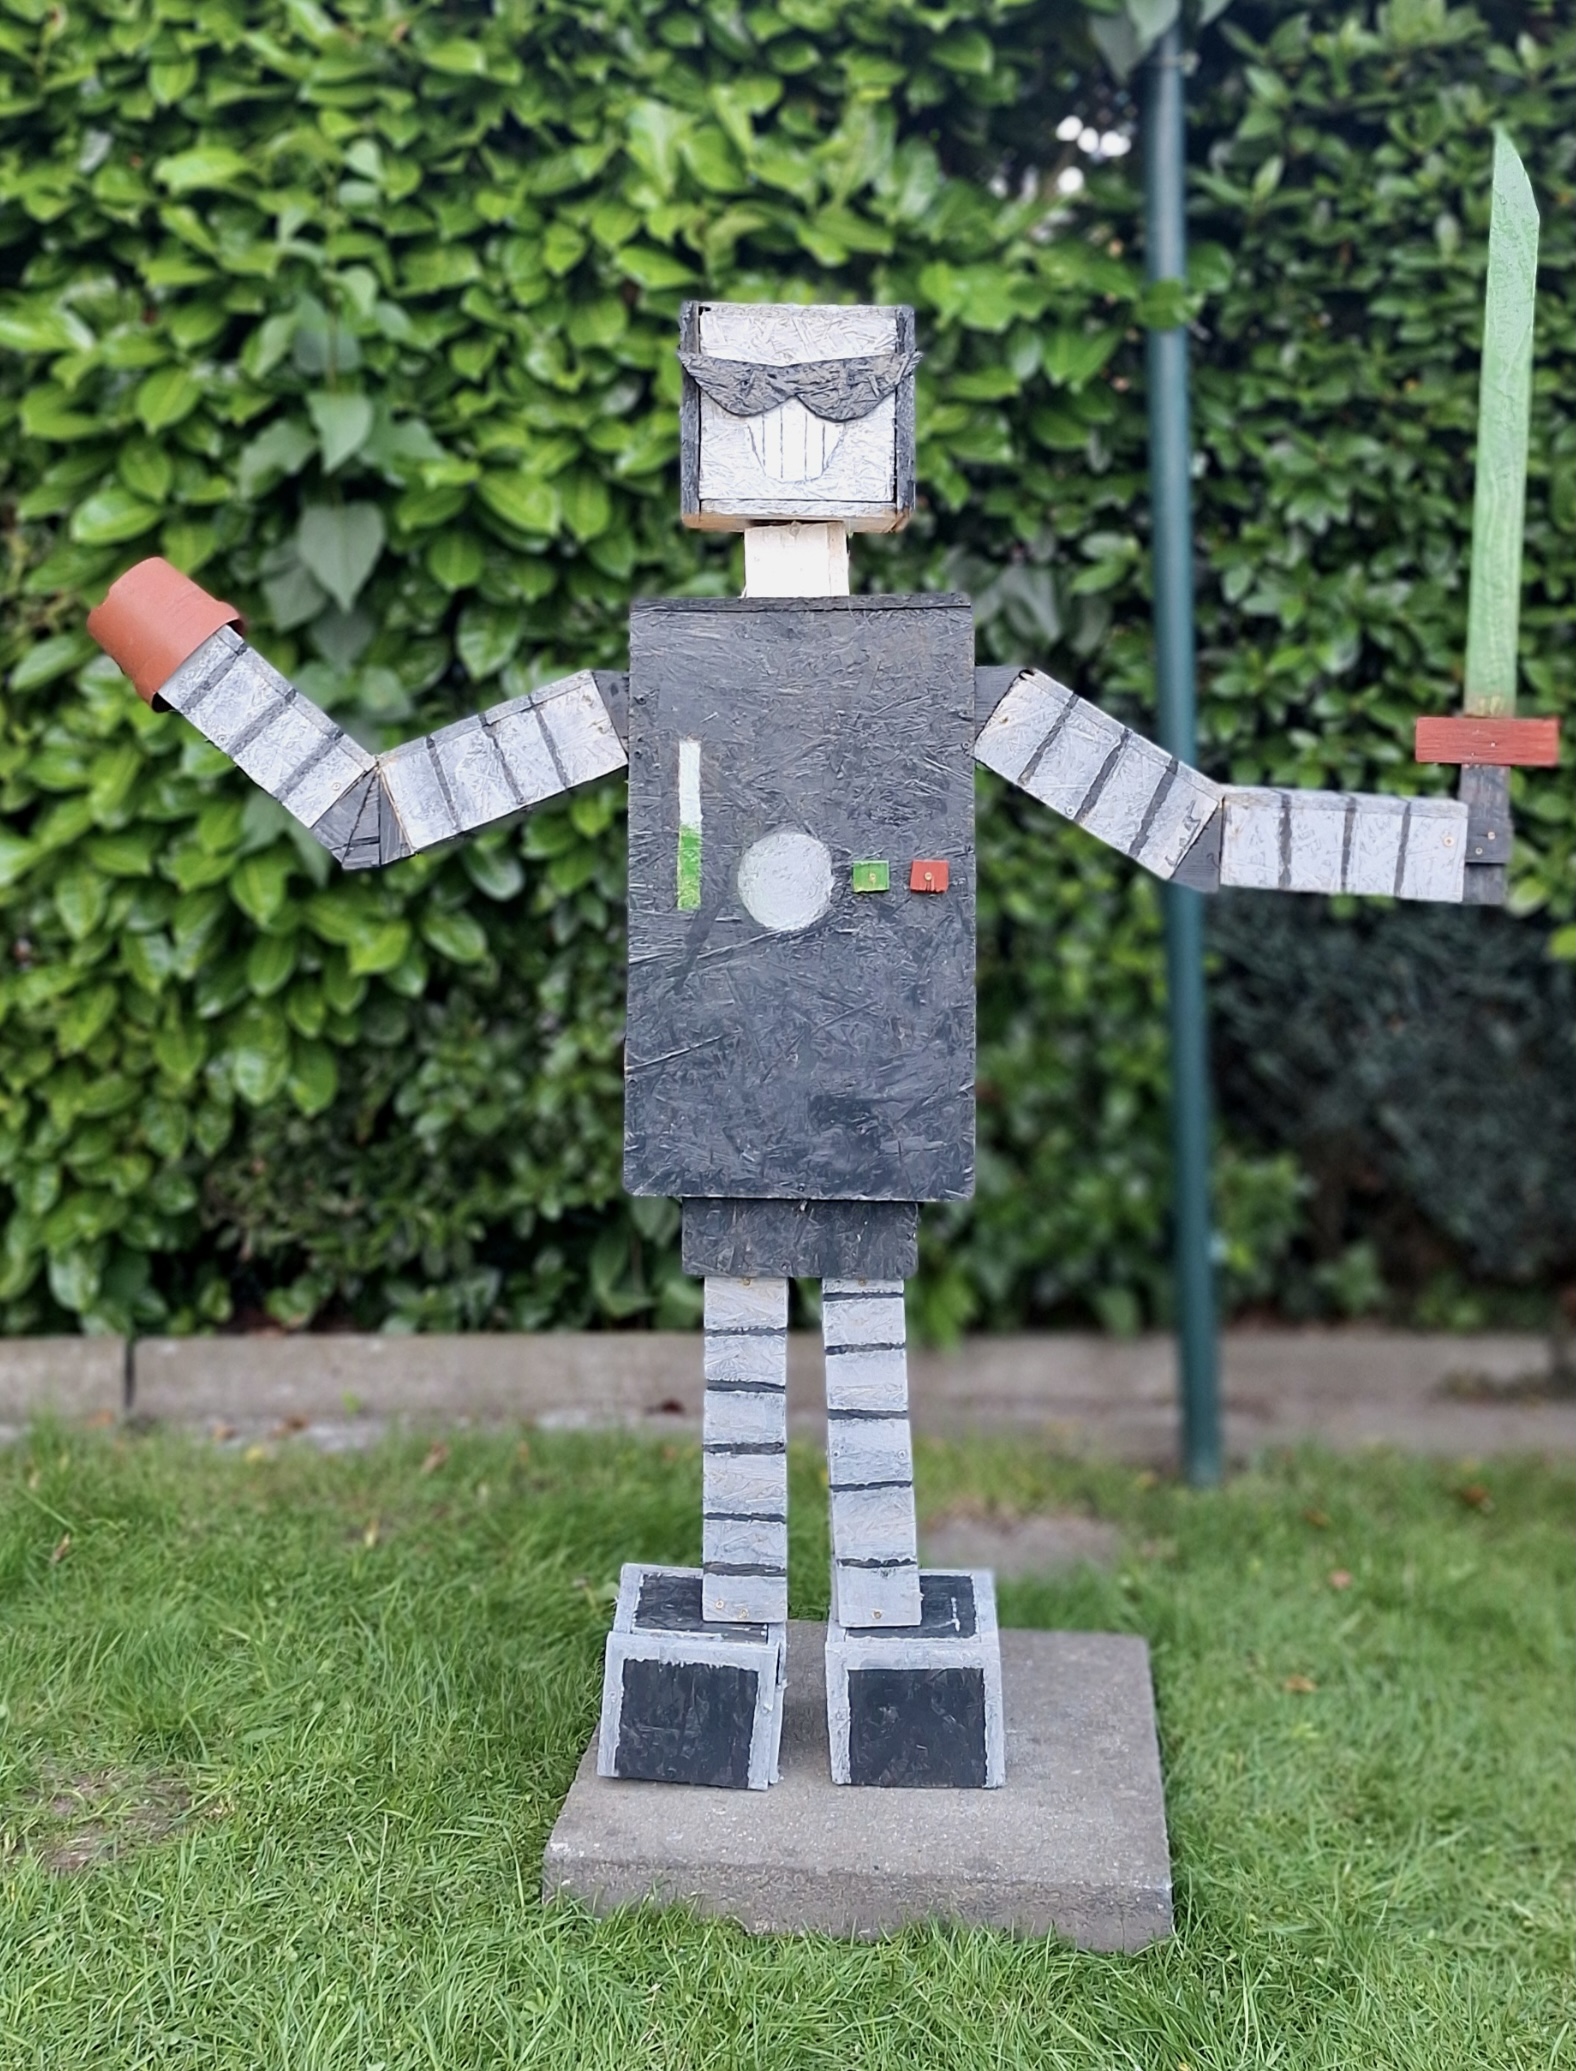 Mission Roboter: Ein spannender Fall für die Glücksagentur